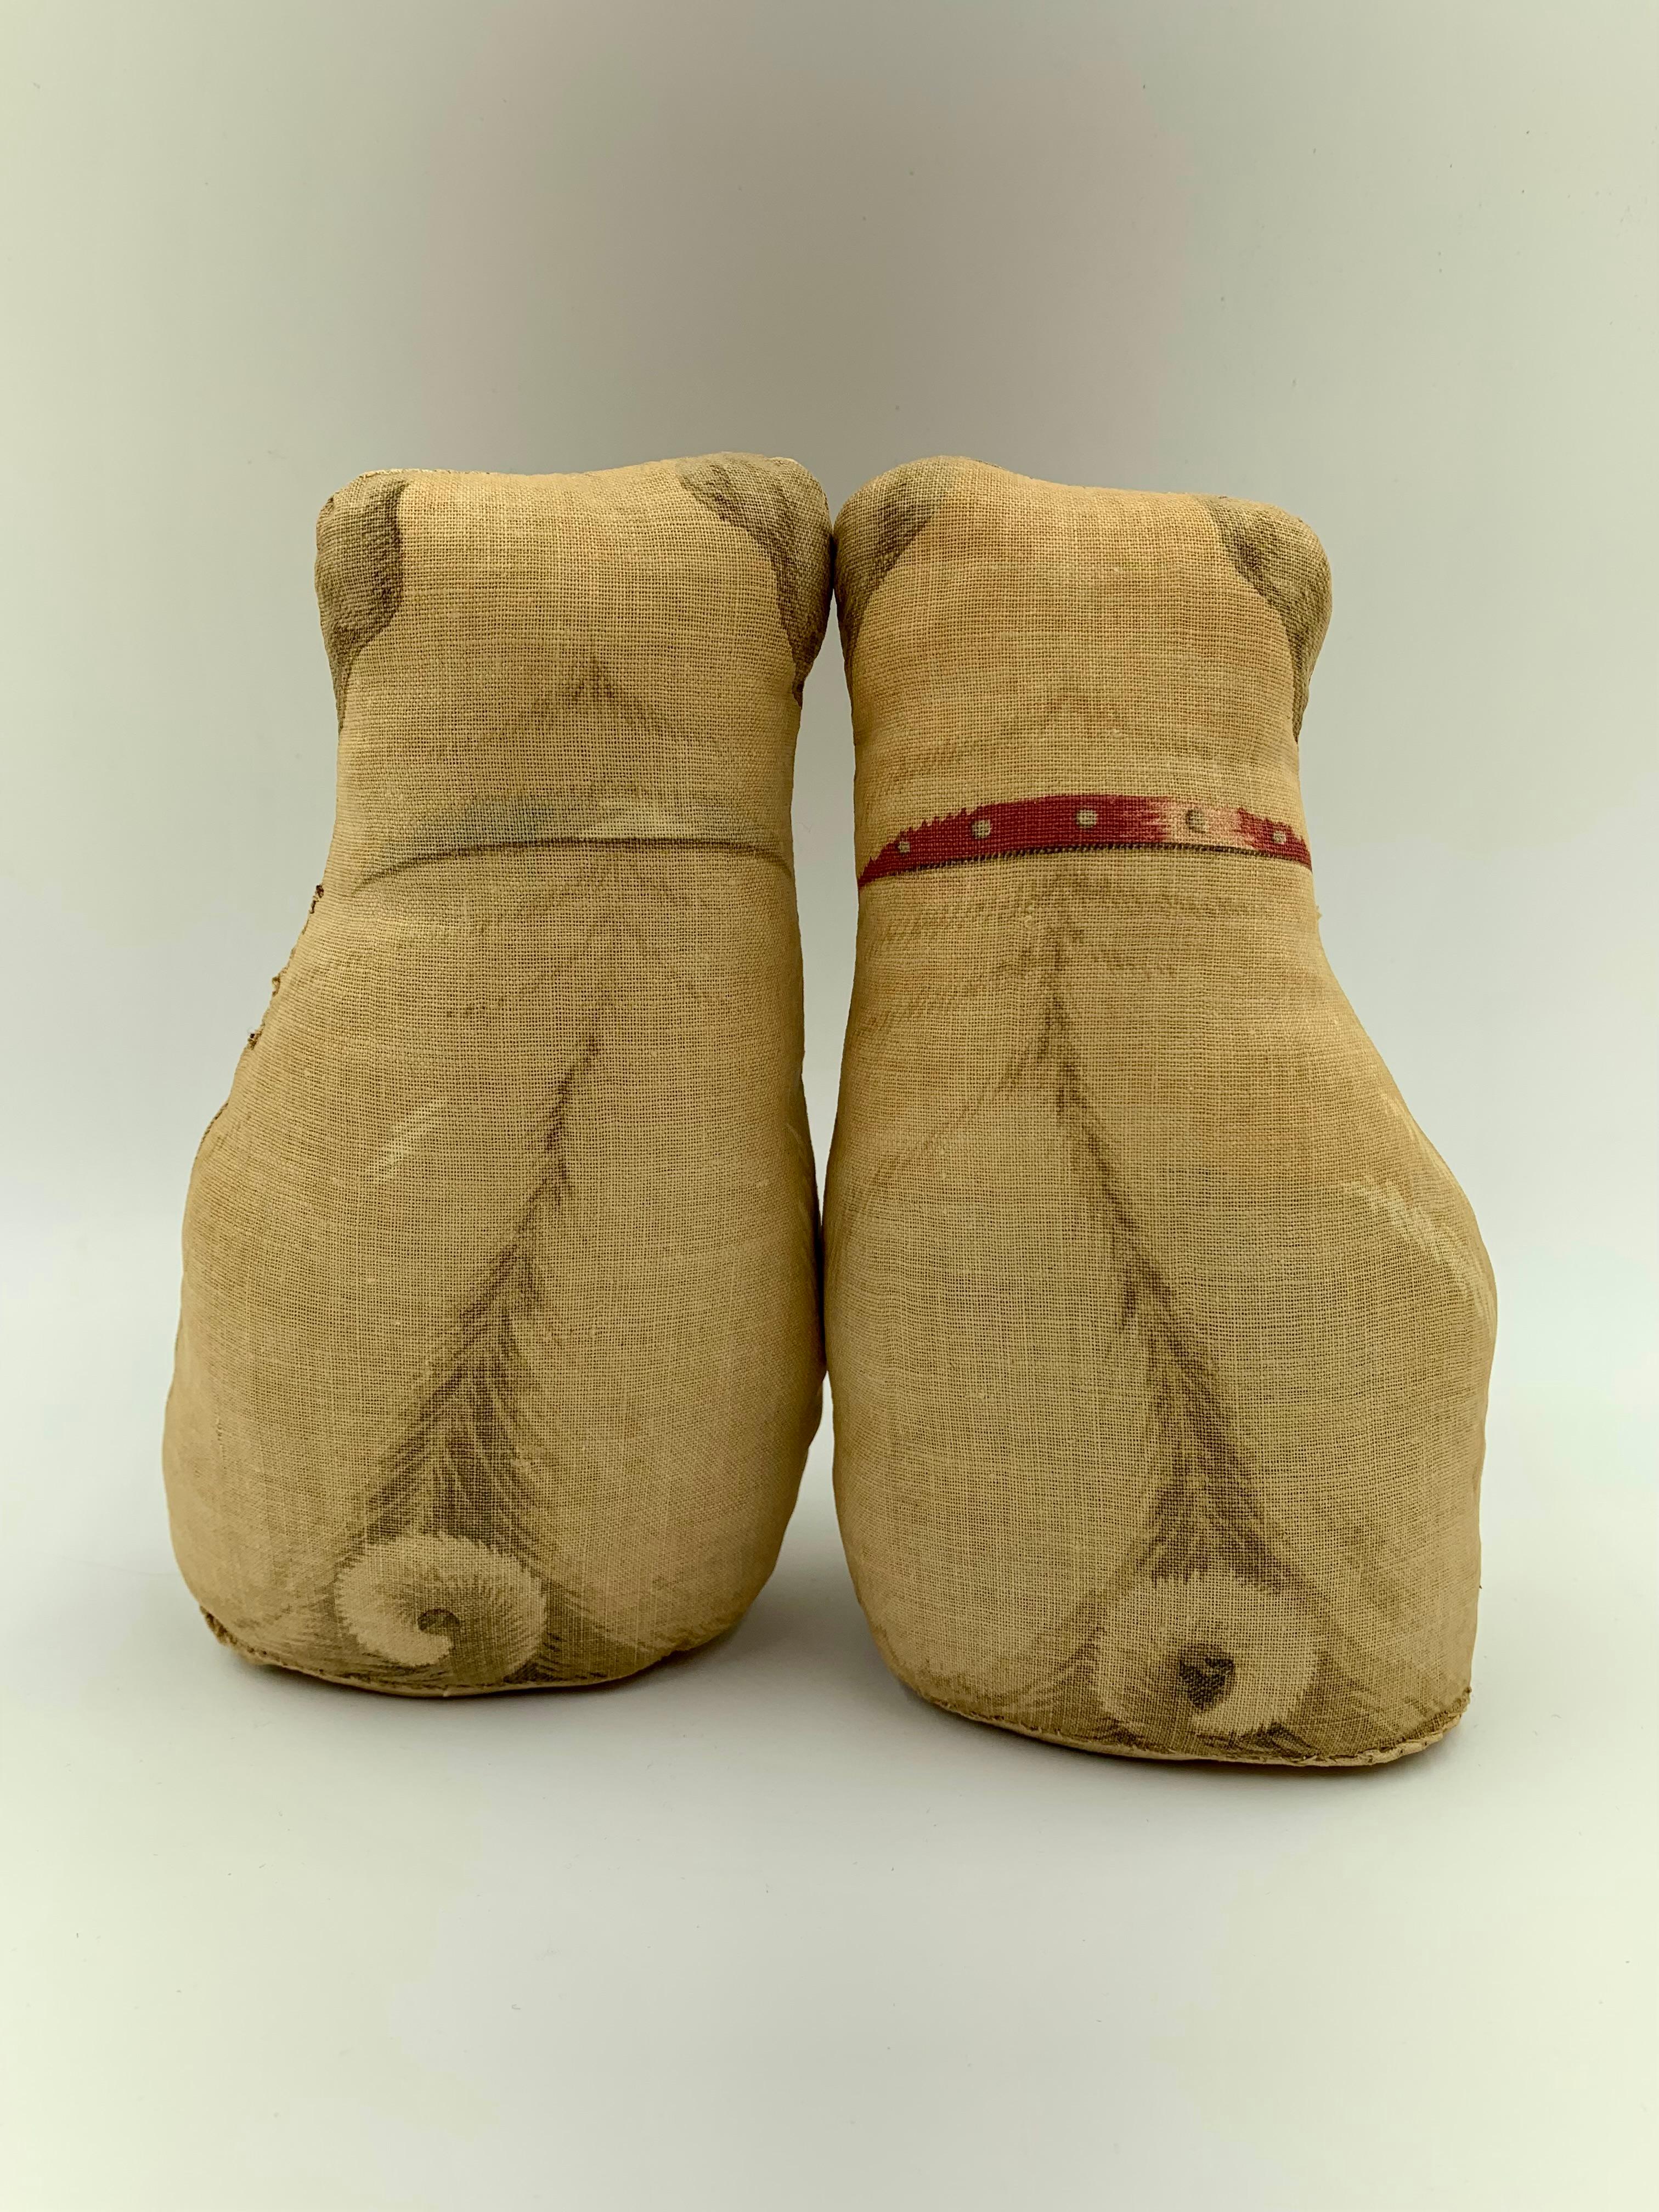 Adorable paire de coussins en coton imprimé carlin du début du 20e siècle, presque identique à une paire provenant de la collection du duc et de la duchesse de Windsor Vente aux enchères de Sotheby's, 11-19 septembre 1997
Composé d'un carlin mâle